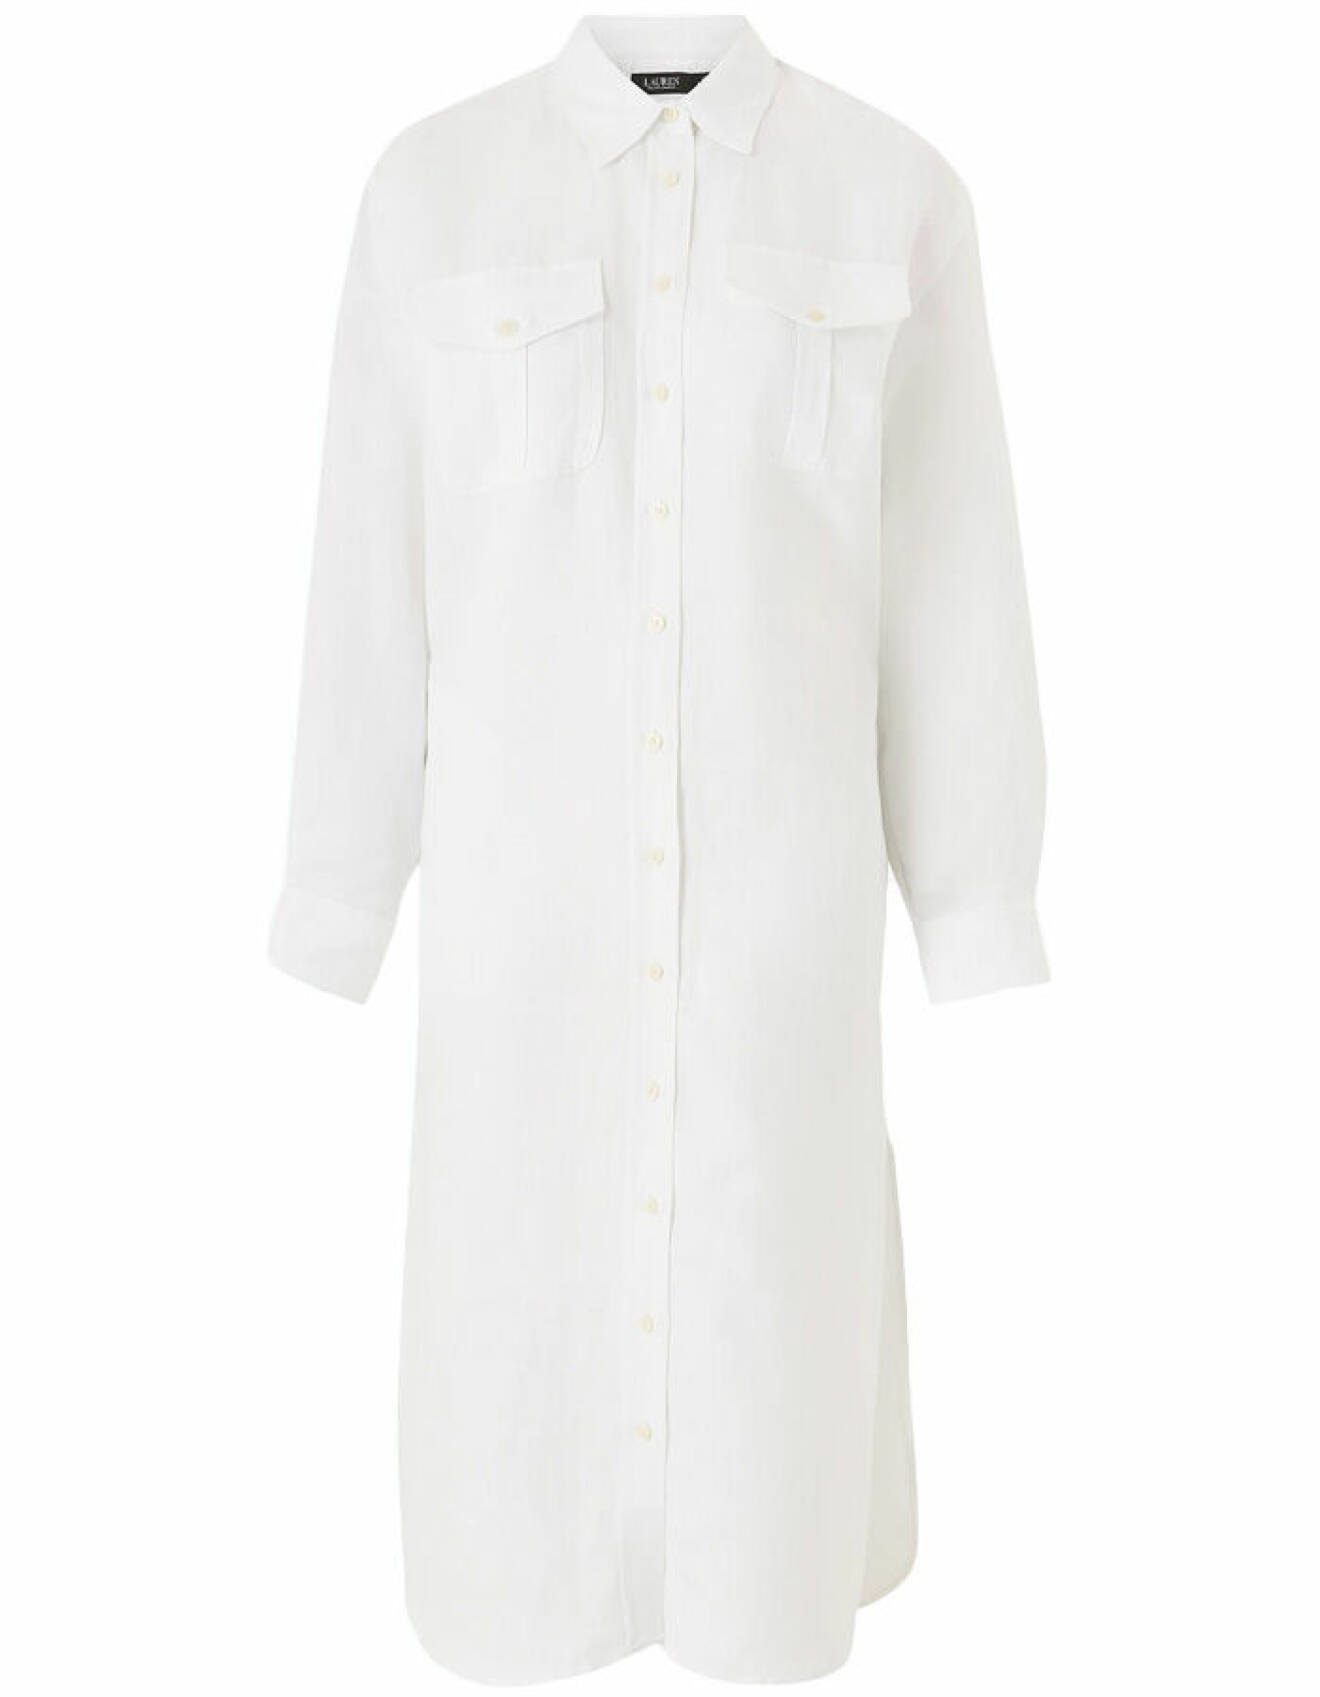 vit skjortklänning med bröstfickor för dam från lauren ralph lauren